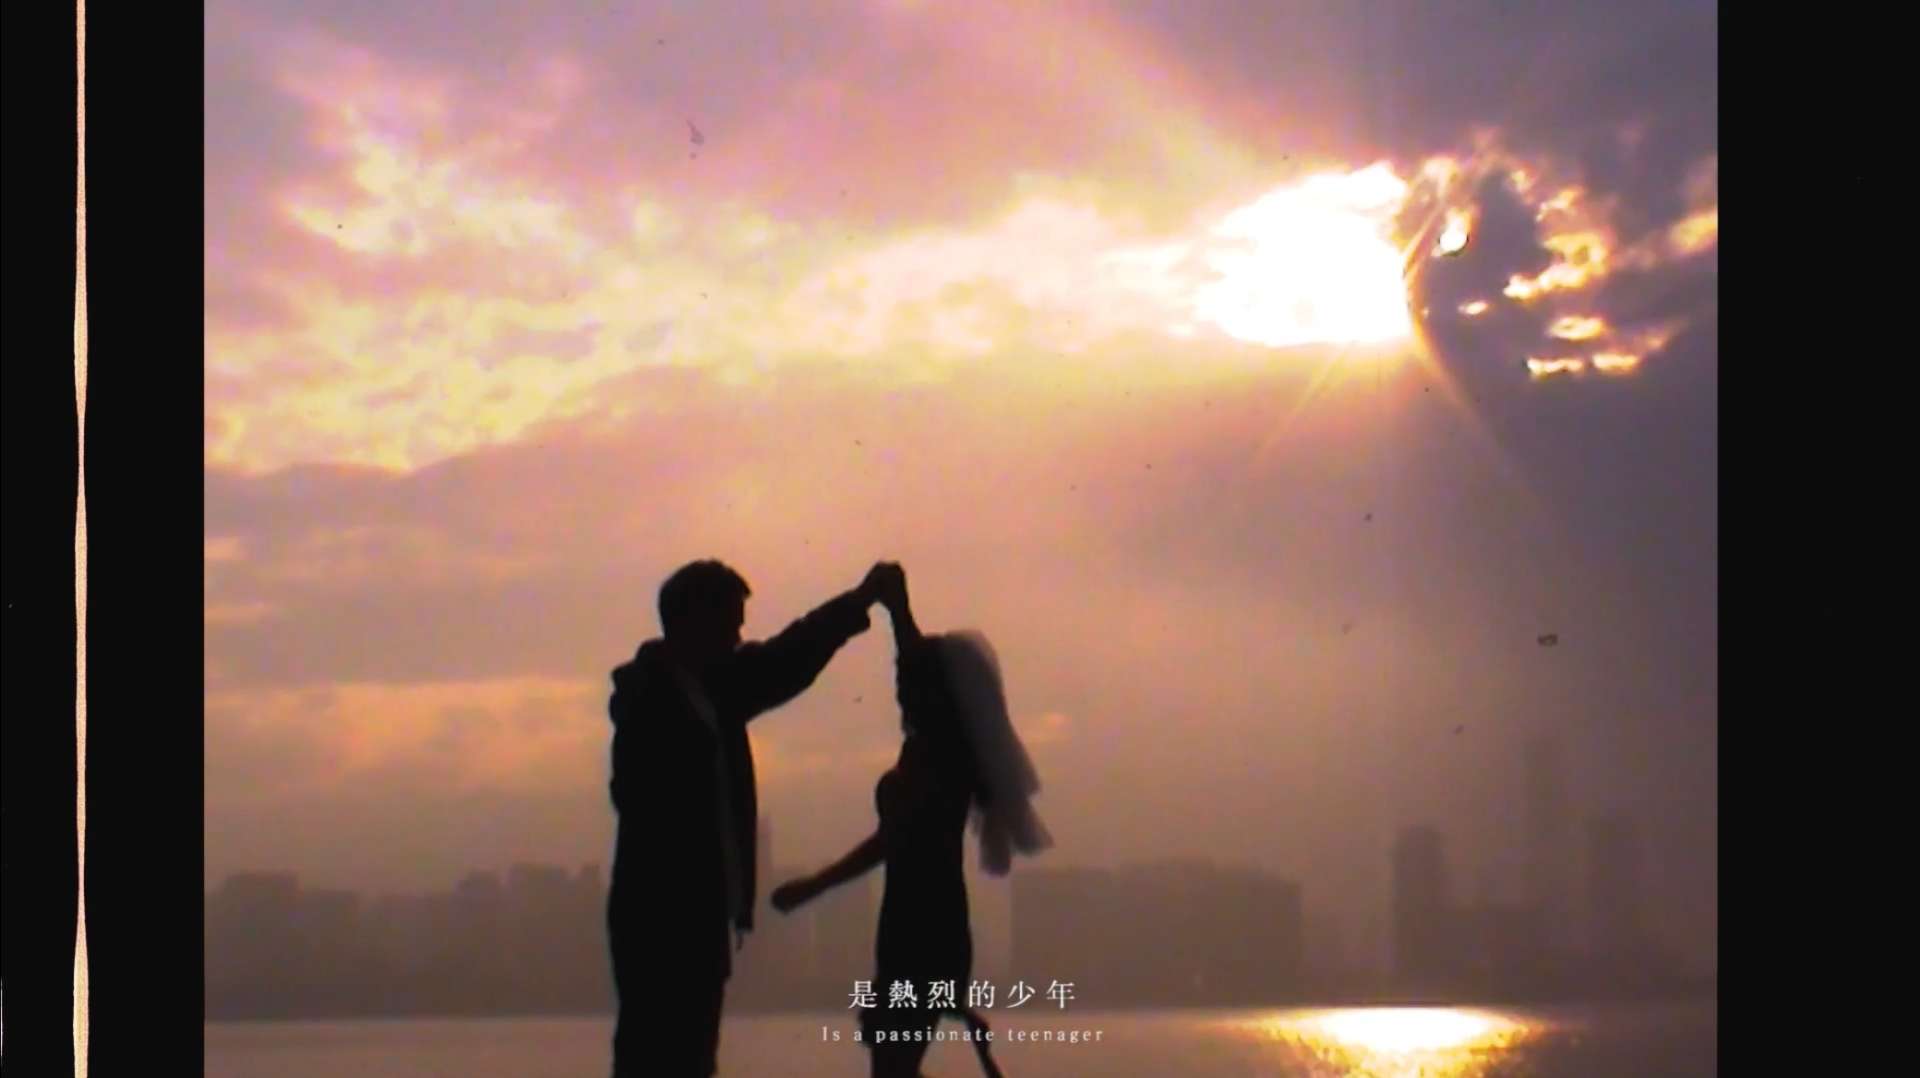 私享FILM | Wedding microfilm 吴城锋& 张跃梢